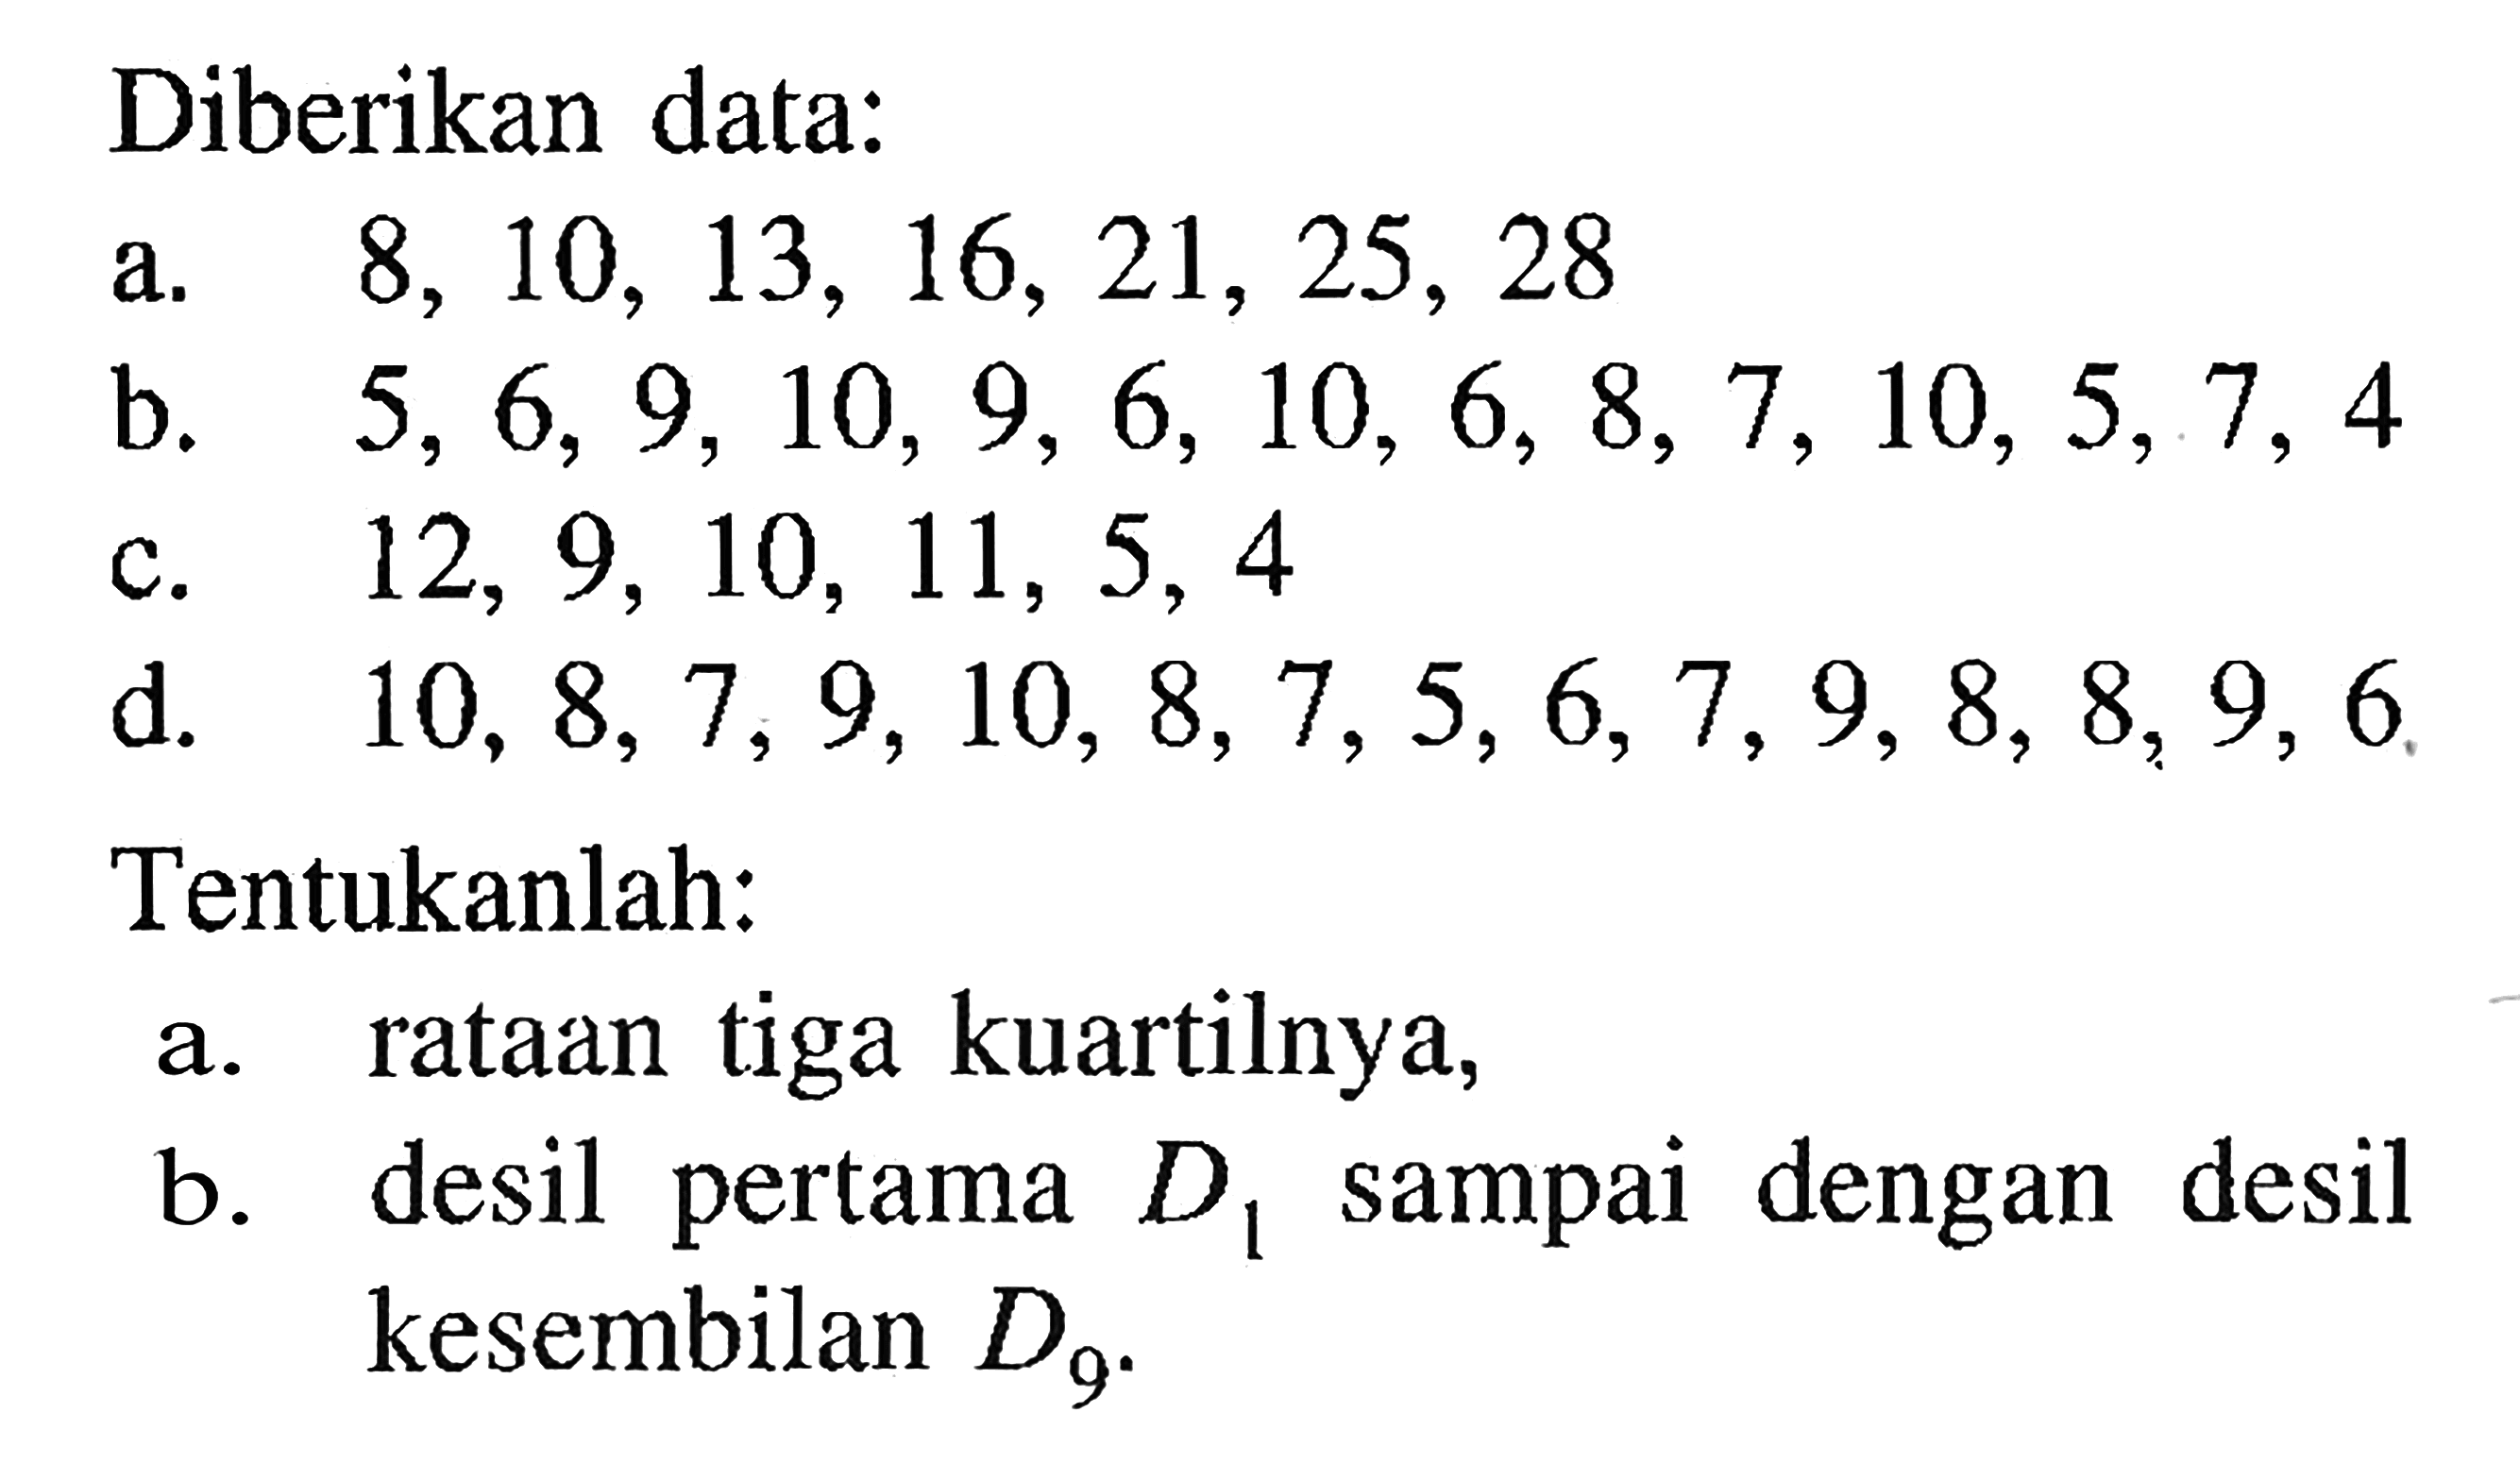 Diberikan data: a. 8,10,13,16,21,25,28 b. 5,6,9,10,9,6,10,6,8,7,10,5,7,4 c. 12,9,10,11,5,4 d. 10,8,7,9,10,8,7,5,6,7,9,8,8,9,6 Tentukanlah: a. rataan tiga kuartilnya, b. desil pertama D1 sampai dengan desil kesembilan D9.